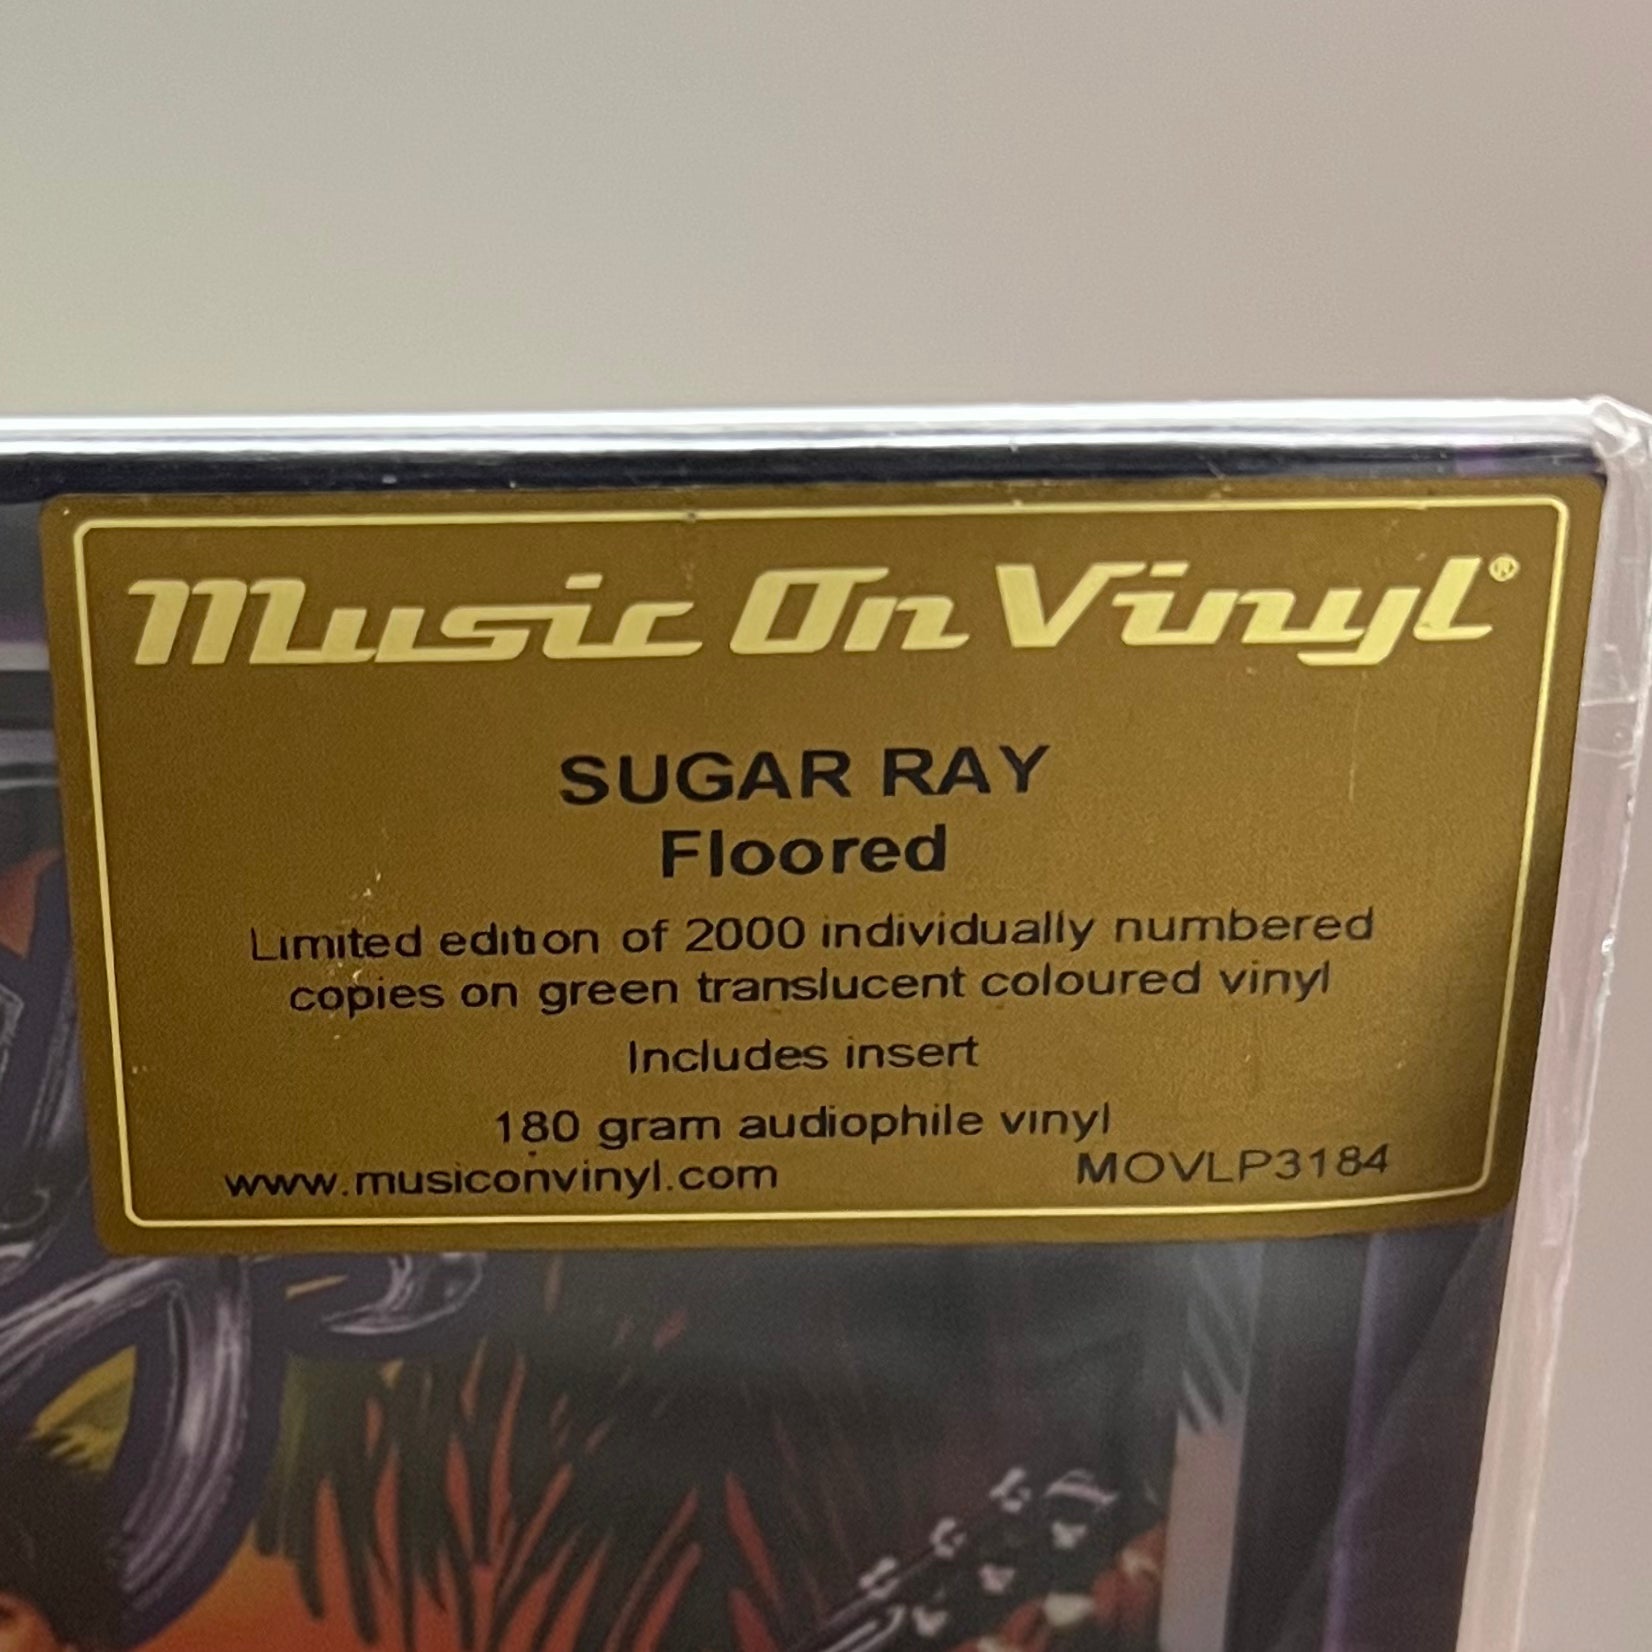 Sugar Ray - Floored (Music On Vinyl) (Translucent Green Vinyl)